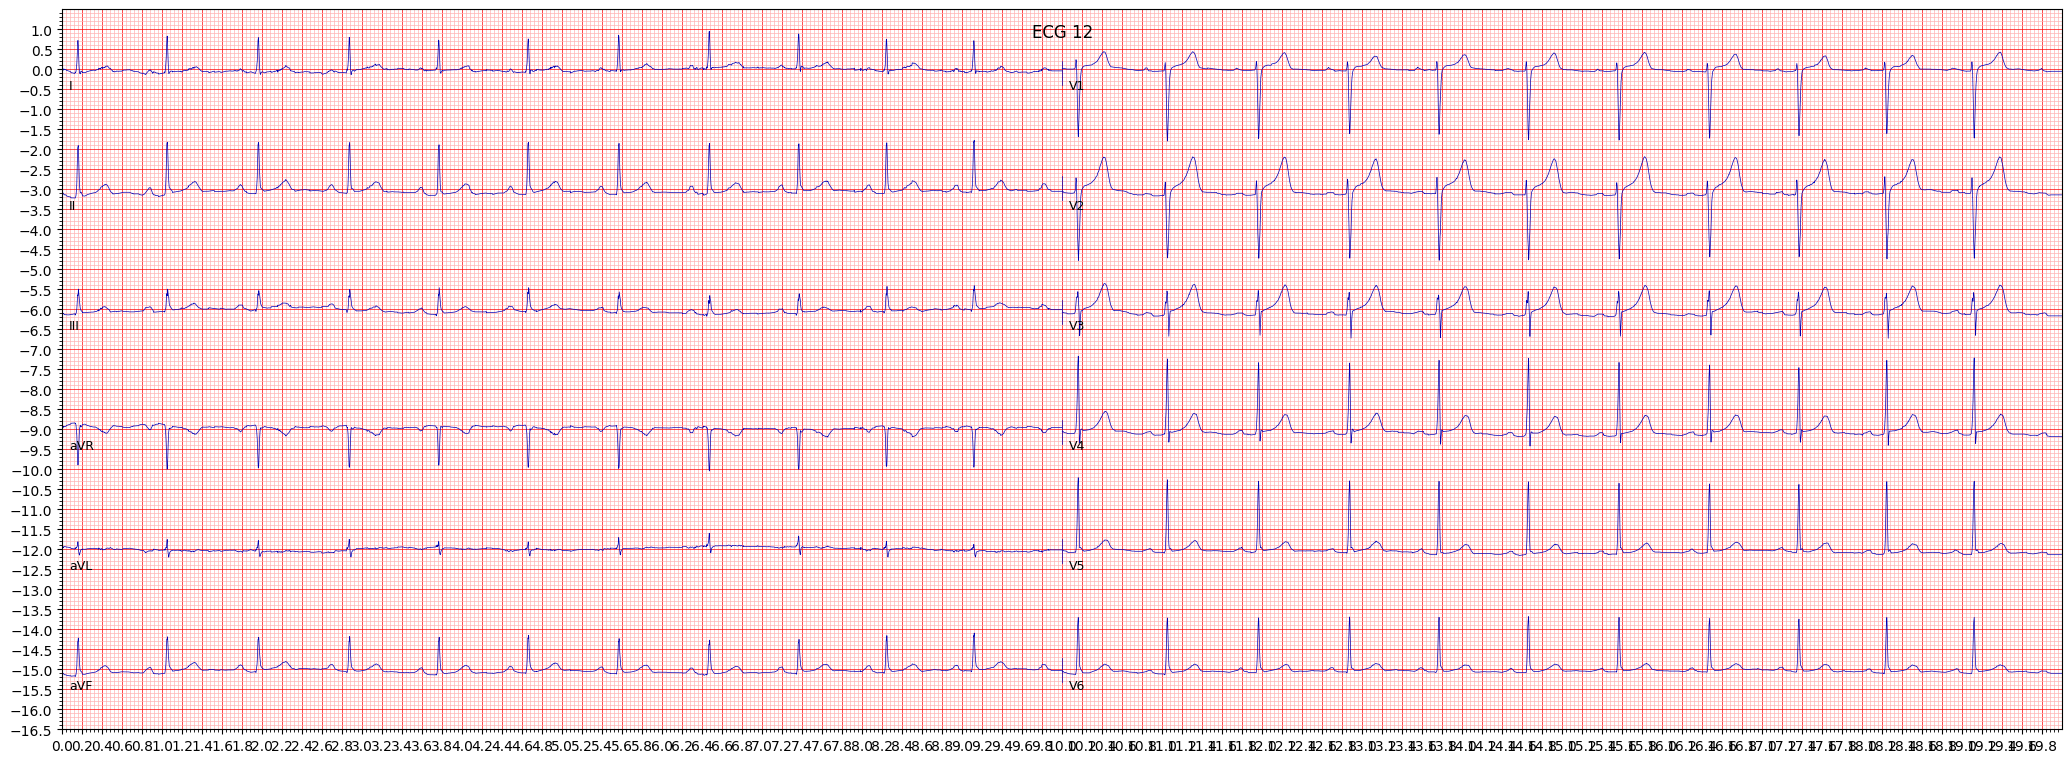 Normal ECG (NORM) example 136